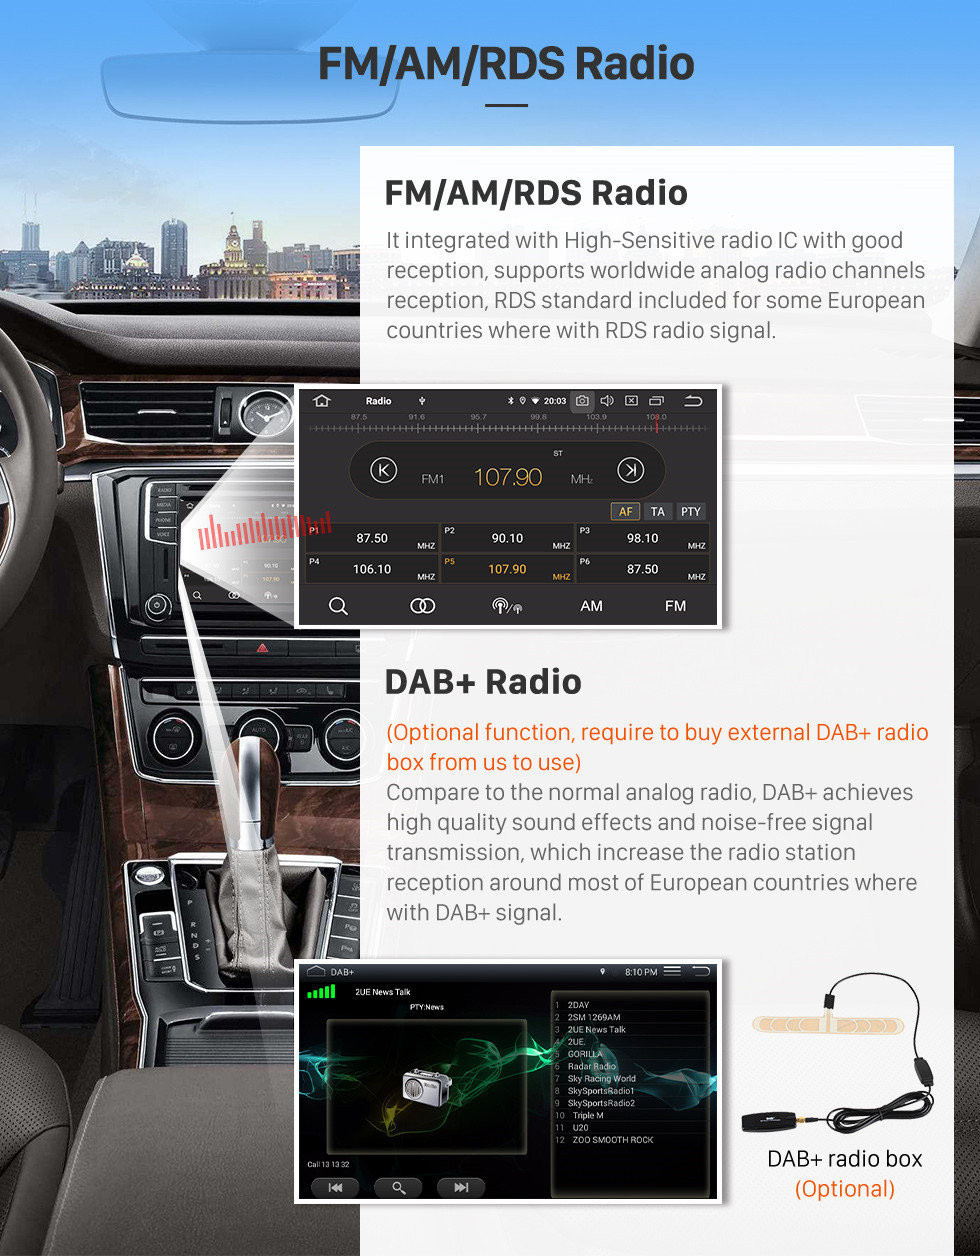 Seicane Android 13.0 10,1-дюймовый 2012 Honda civic (LHD) Радио GPS-навигация Автомобильная стереосистема с Bluetooth Цифровое телевидение Зеркальная связь OBD2 DVR Резервная камера TPMS RDS Управление на руле